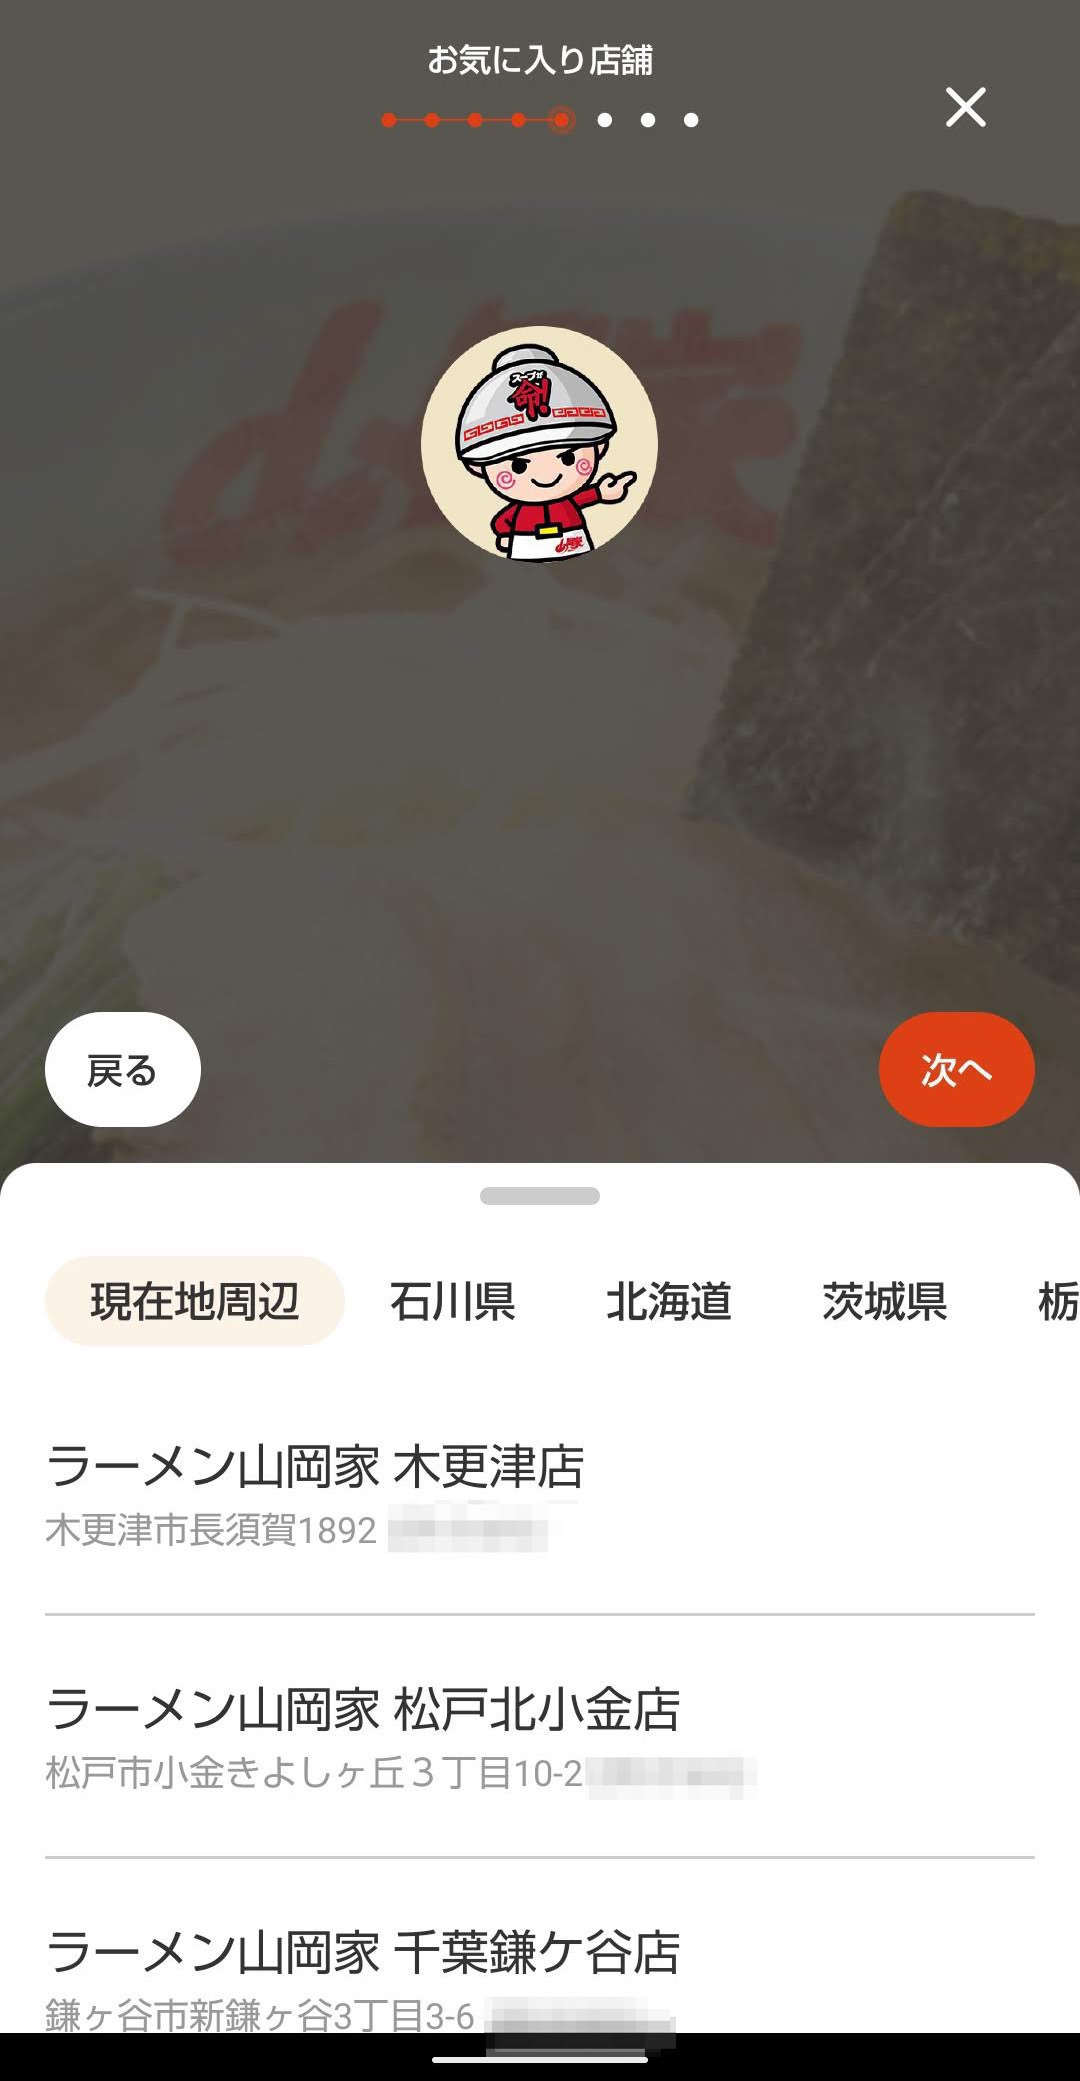 ラーメン山岡家公式アプリ　ユーザー登録ログイン　お気に入り店舗